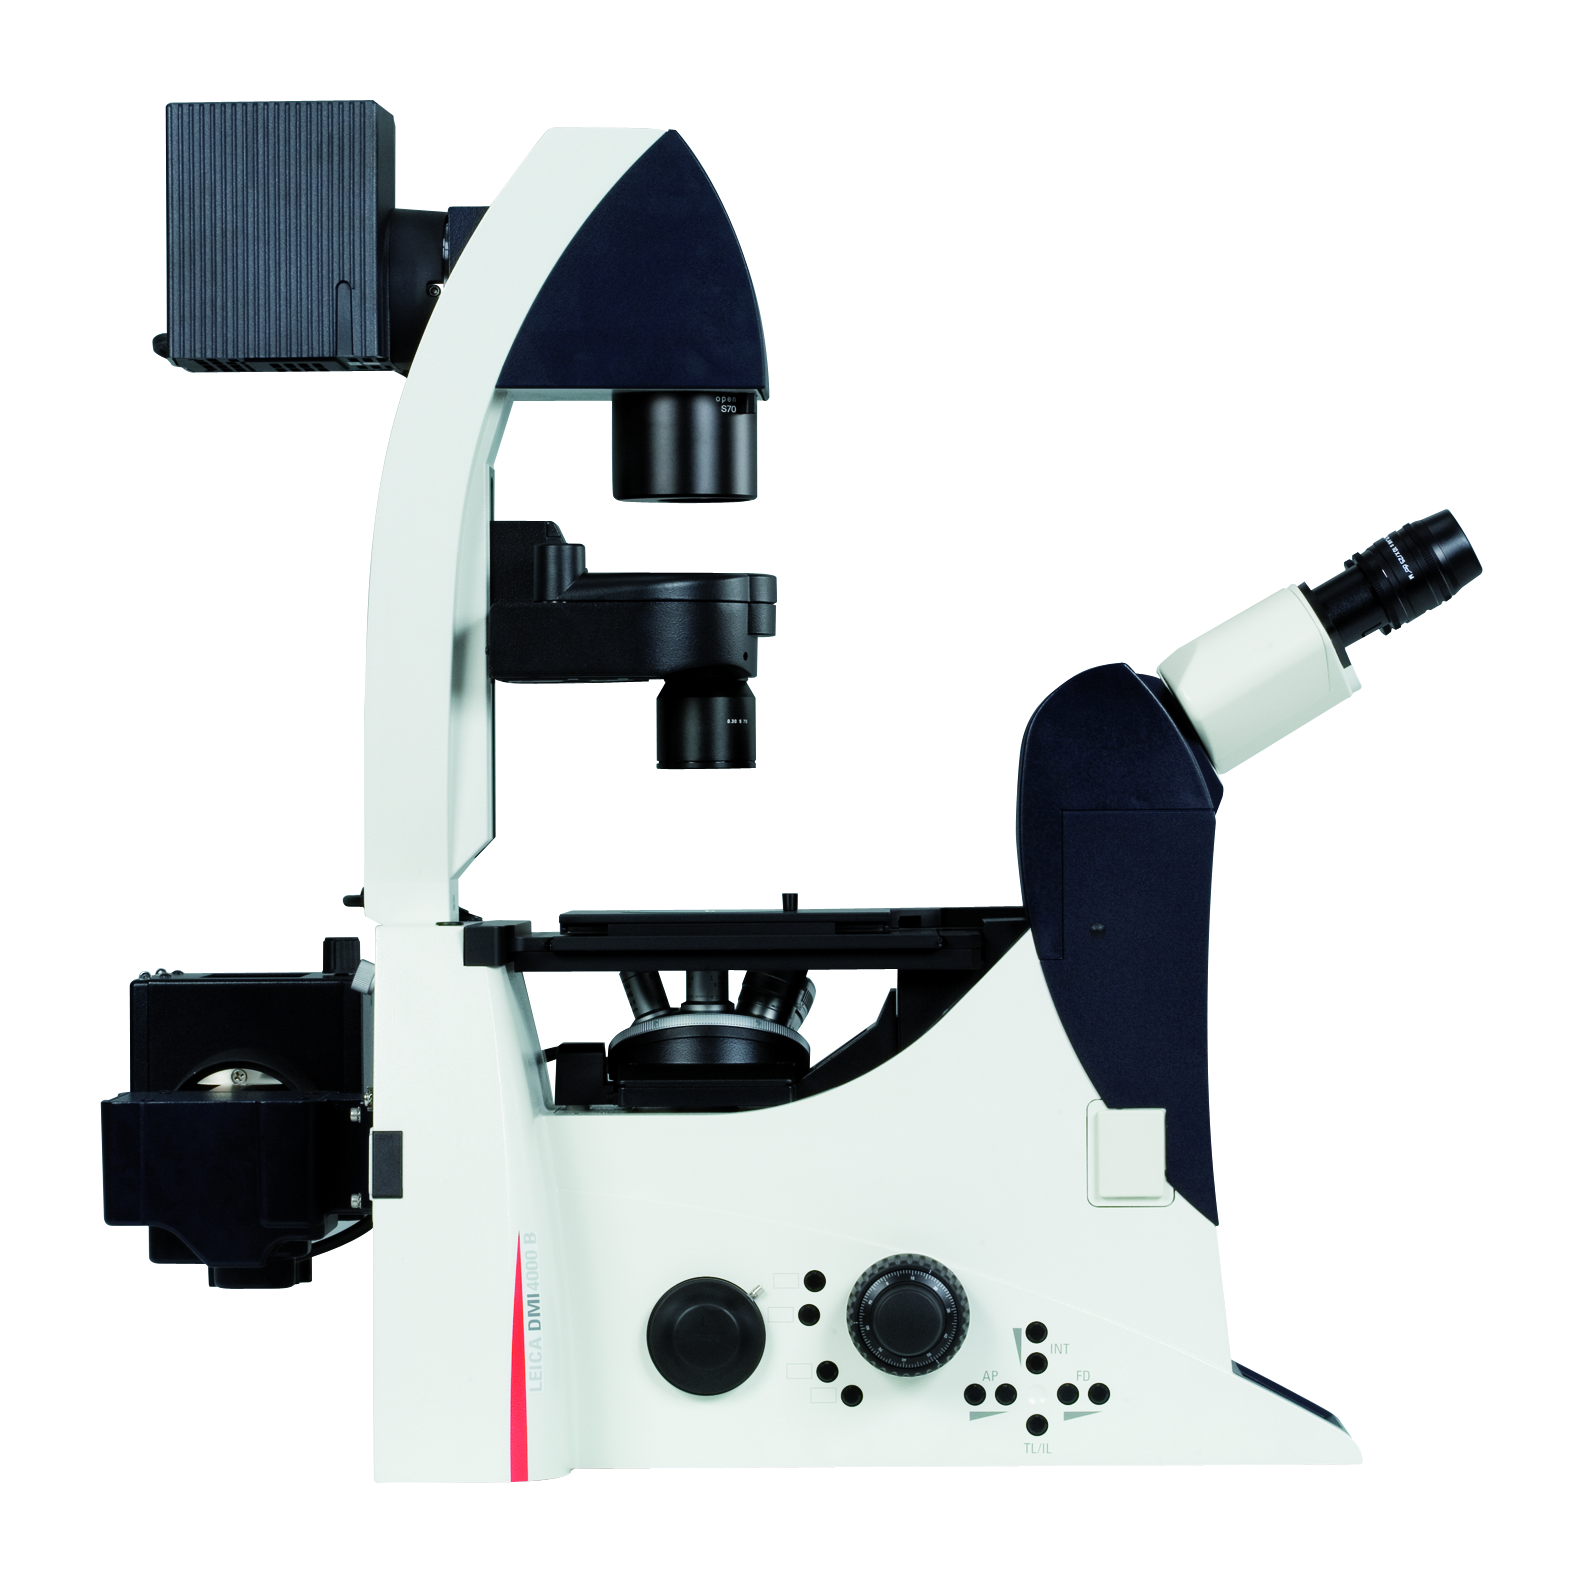 Il sistema Leica DMI4000 B si combina con una vasta gamma di accessori, per la personalizzazione del sistema di imaging secondo la specifica applicazione dell'utente.